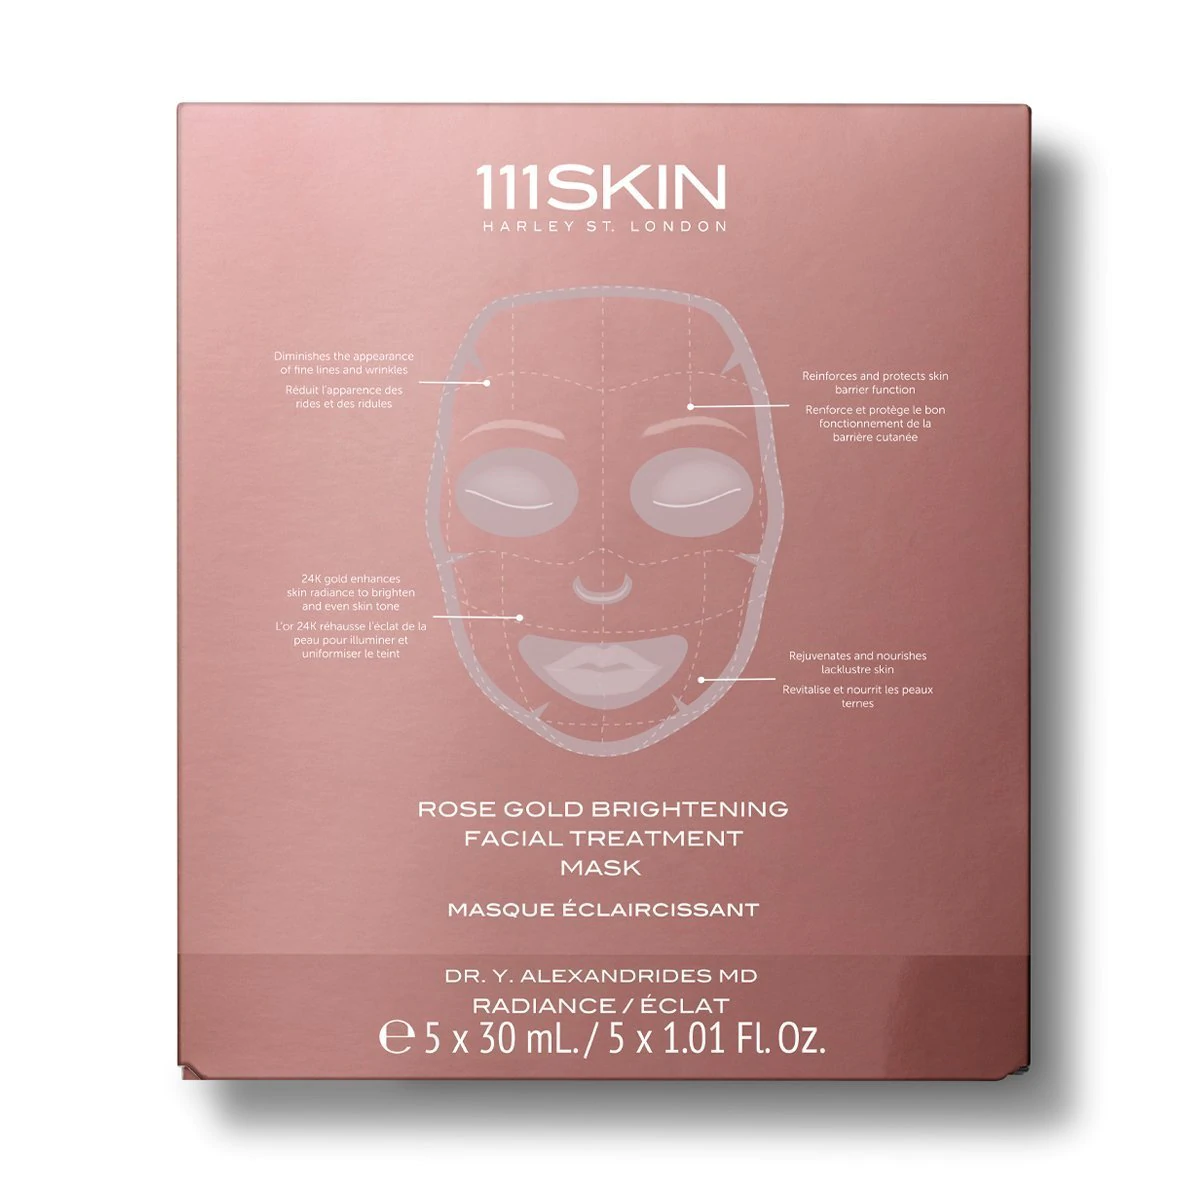 111SKIN Rose Gold Brightening Facial Treatment Mask (Pack of 5) - интернет-магазин профессиональной косметики Spadream, изображение 40018